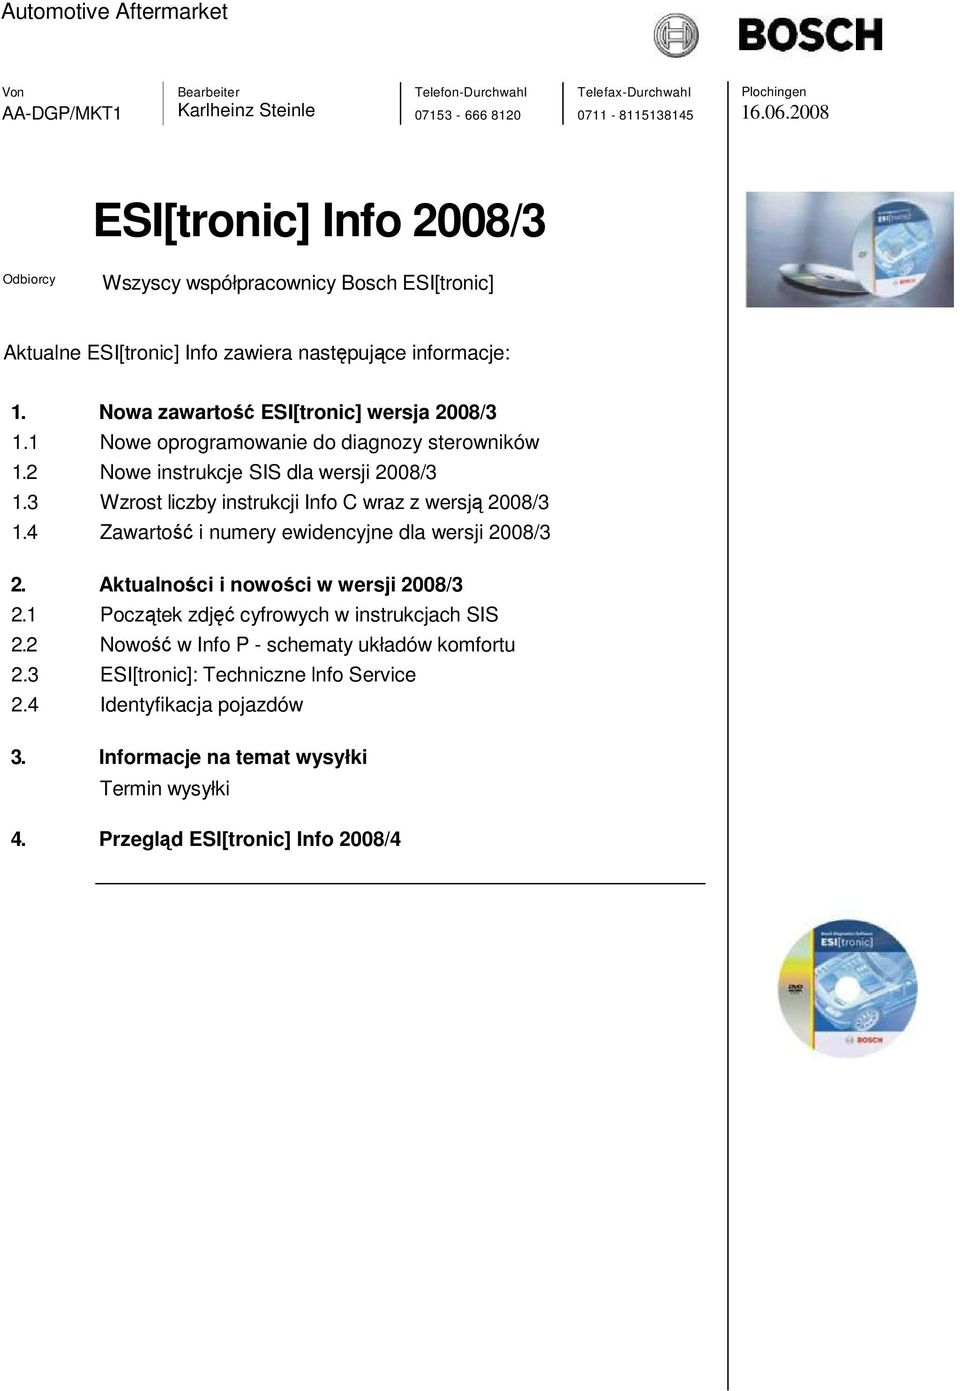 3 Wzrost liczby instrukcji Info C wraz z wersją 2008/3 1.4 Zawartość i numery ewidencyjne dla wersji 2008/3 2. Aktualności i nowości w wersji 2008/3 2.